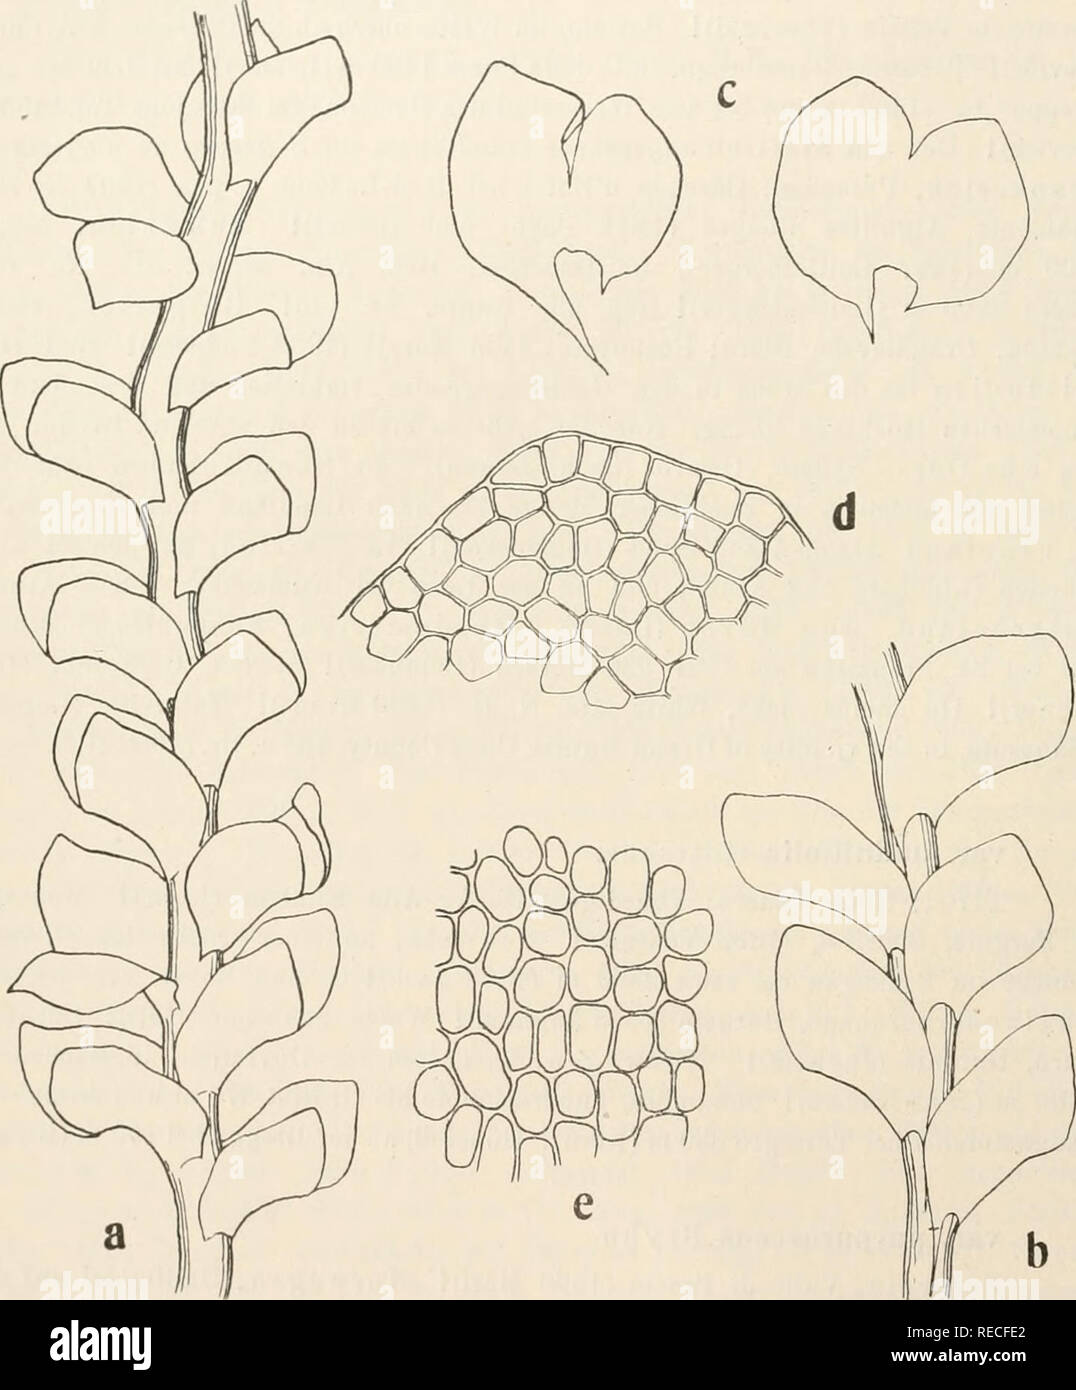 . Dr. L. Rabenhorst's Kryptogamen-Flora von Deutschland, Oesterreich und der Schweiz. Cryptogams -- Germany; Cryptogams -- Austria; Cryptogams -- Switzerland. 470 Scapania. 254. Scapania obscura^) (Arnell und Jensen) Schiffner, Bryolog. Fragmente Nr. 49, Oesterr. botan. Zeitschr. 1908 Nr. 10. Synonyme: Martinellia obscura Arnell und Jensen, Moose des Sarekgebietes S. 91 (1907). Martinellia subalpiua, forma atra, gracilis et lobis distantibus Arnell, Leberuioosstud. im nördl. Norwegen S. 19 (1892).. Fig. 139. Scapania obscura. a Stengelstück, Verg. ^^i; b Steugelstück von der Unterseite, Verg.  Stock Photo